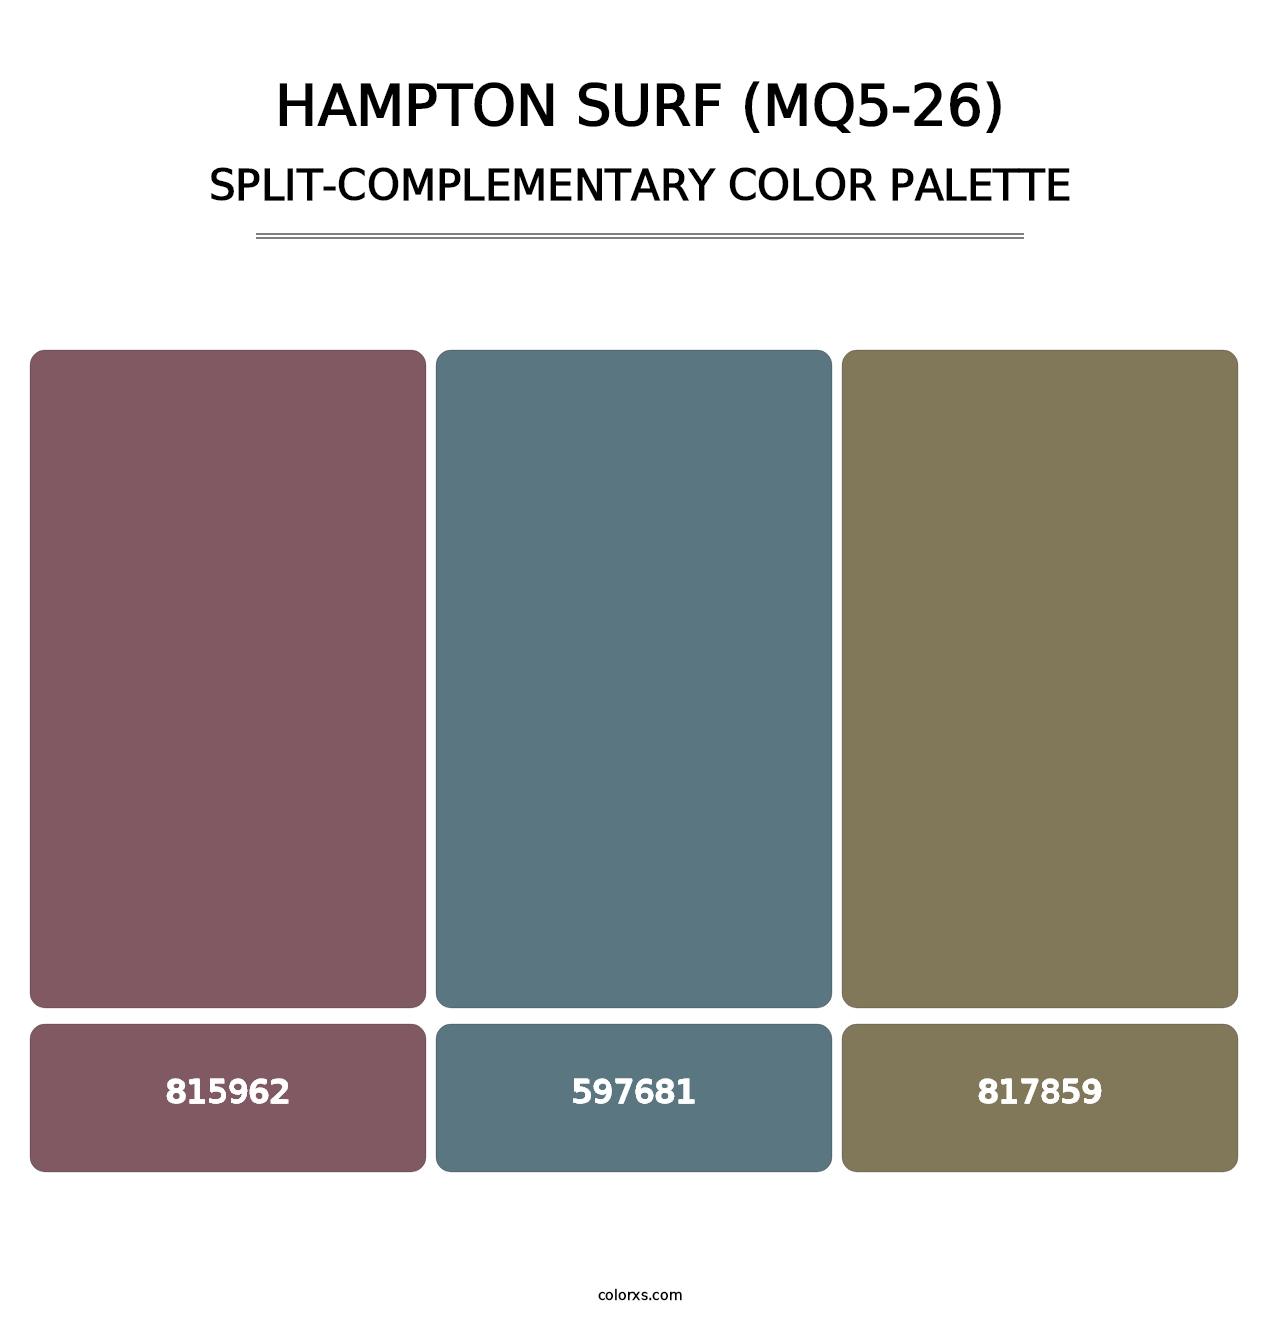 Hampton Surf (MQ5-26) - Split-Complementary Color Palette